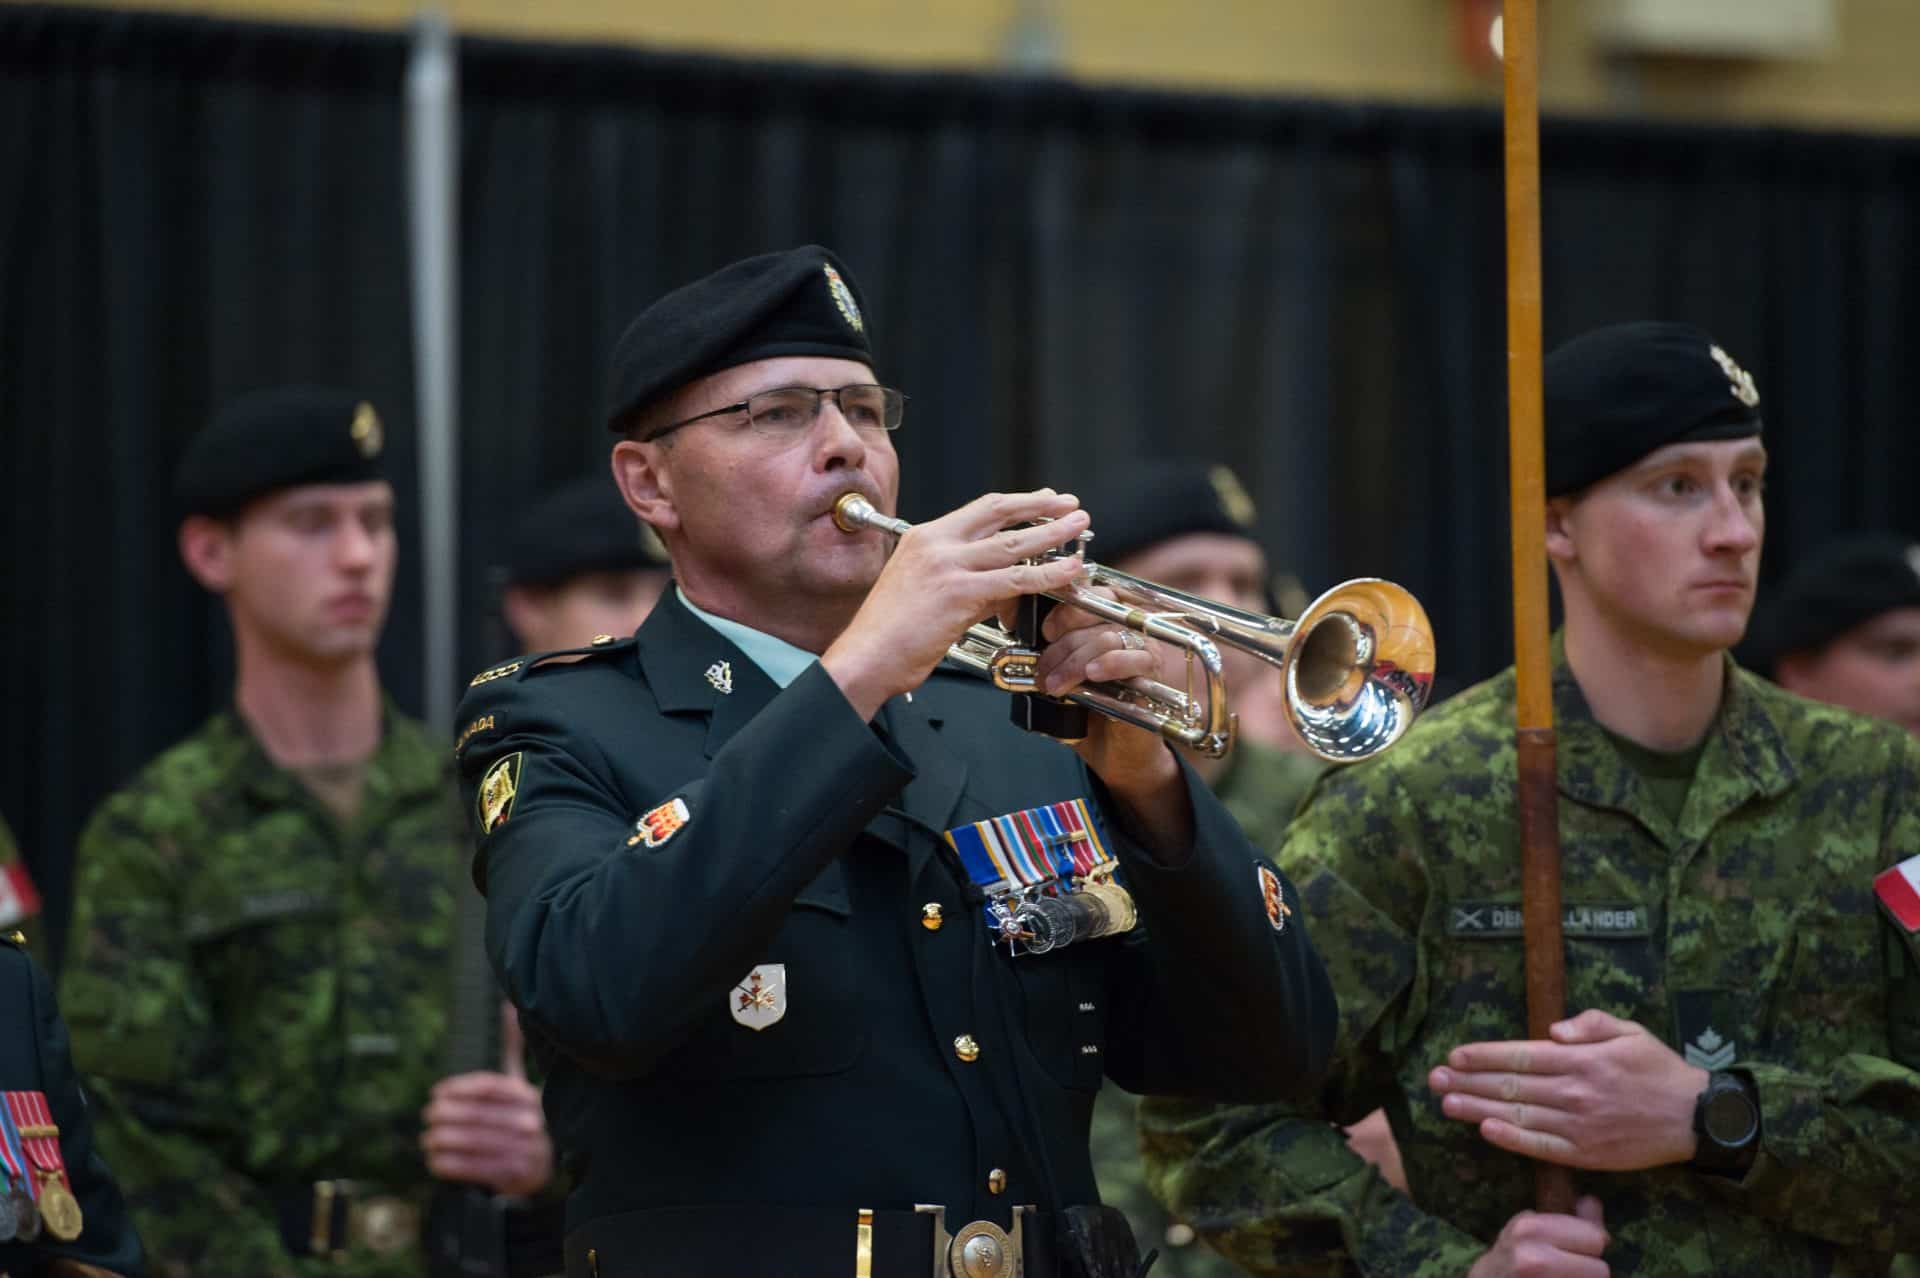 military man playing trumpet at griesbach Un militaire joue de la trompette à Griesbach.